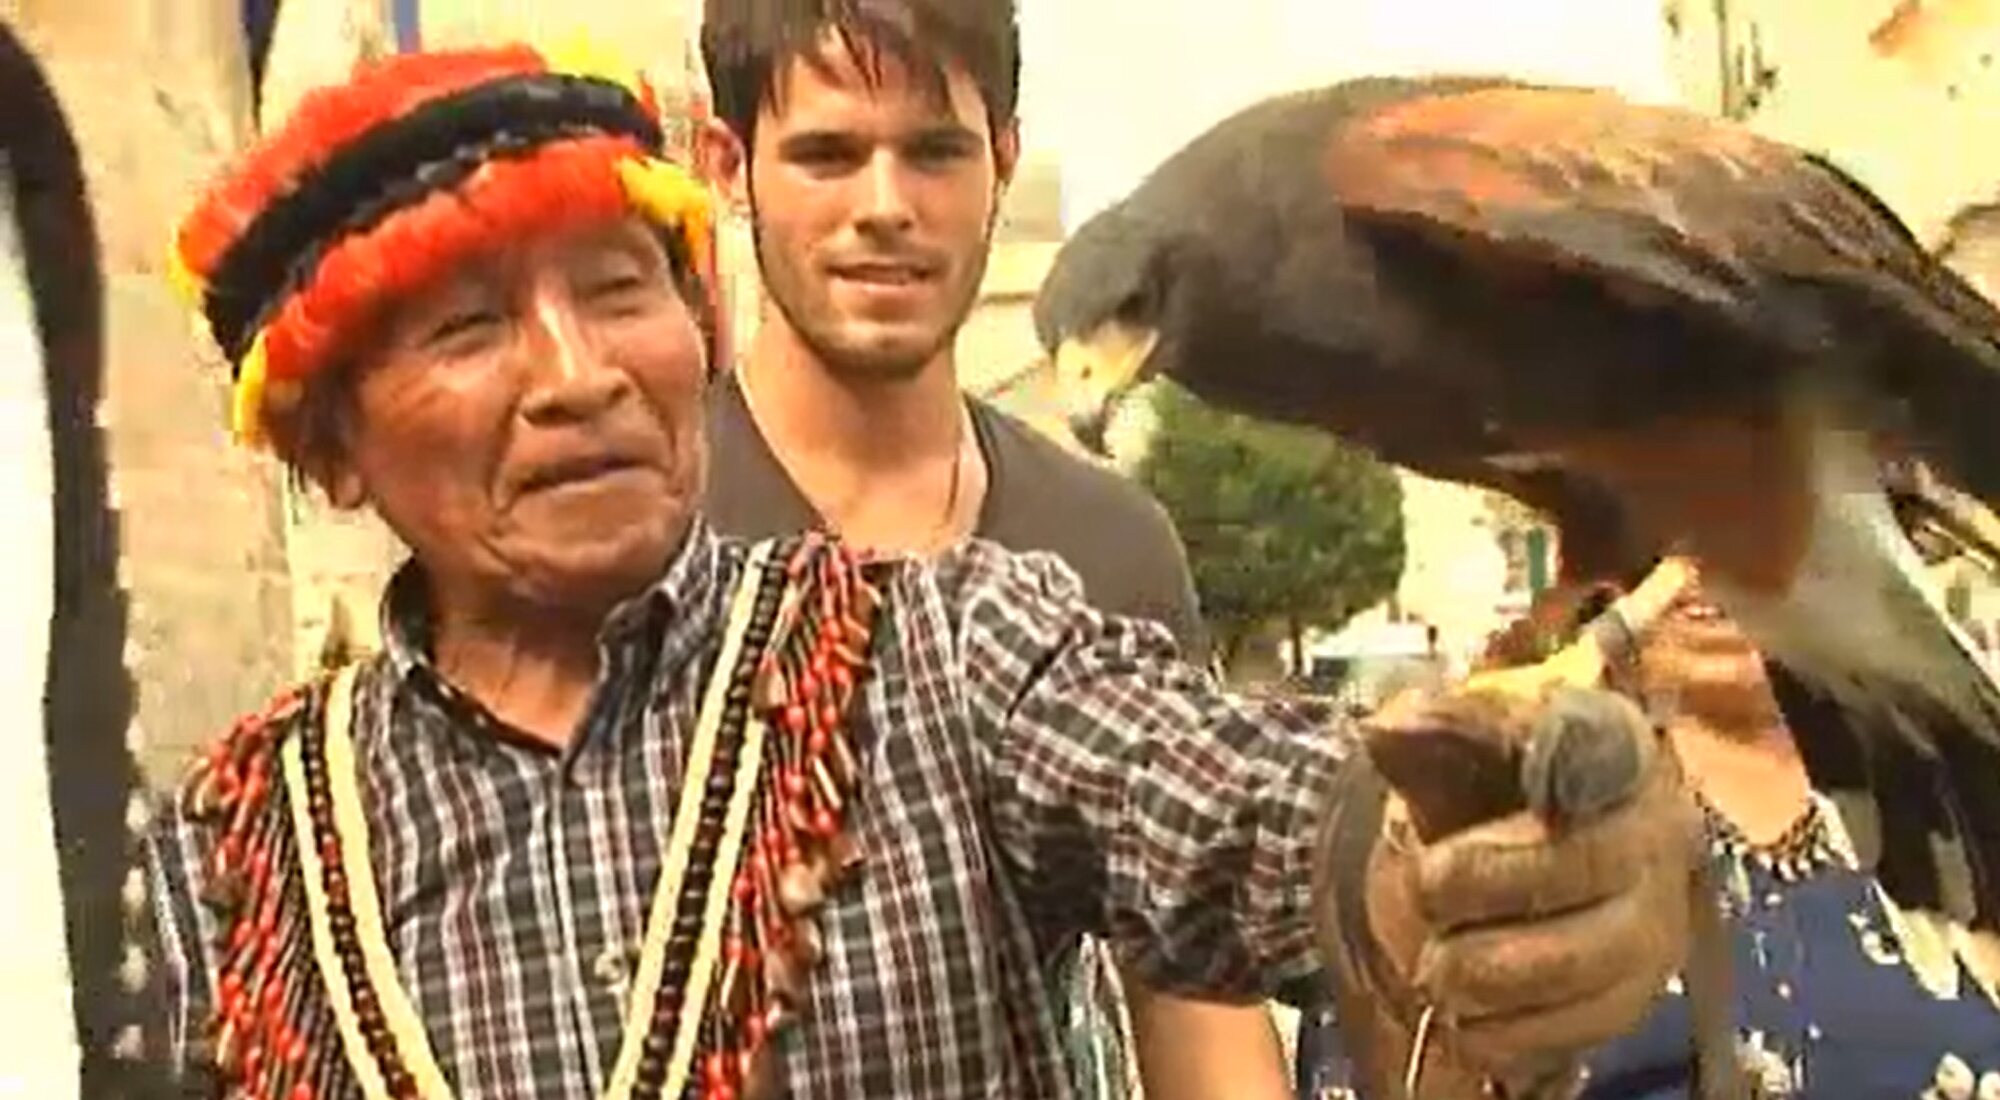 Yambia sostiene un águila durante su visita a Ávila en 'Perdidos en la ciudad'